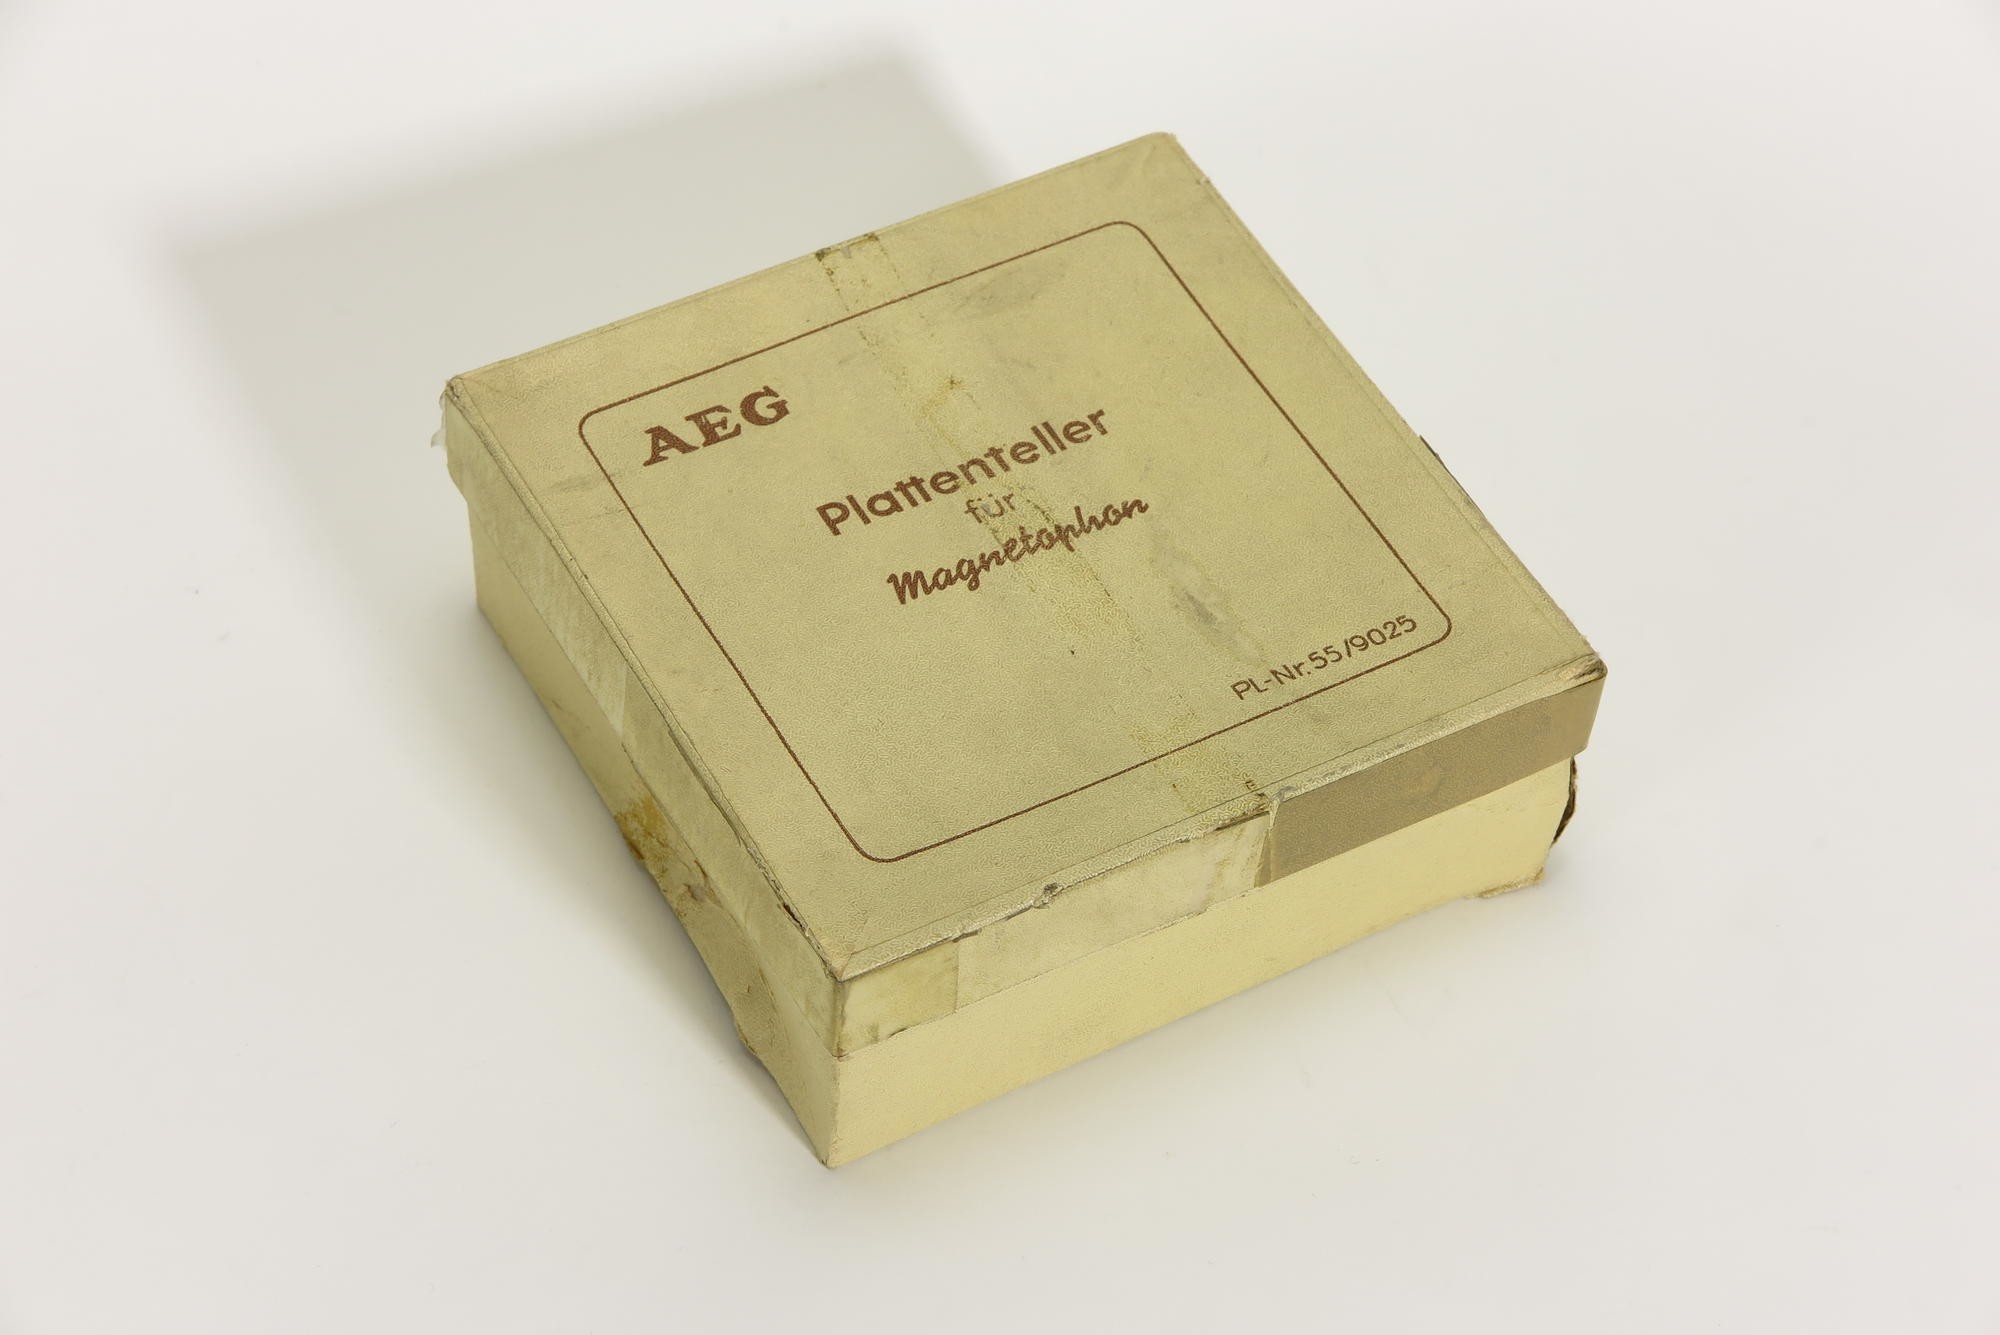 Verpackungskarton, Zubehör zu Plattenteller für AEG Magnetophon KL15 und KL15D, (Stiftung Deutsches Technikmuseum Berlin CC0)